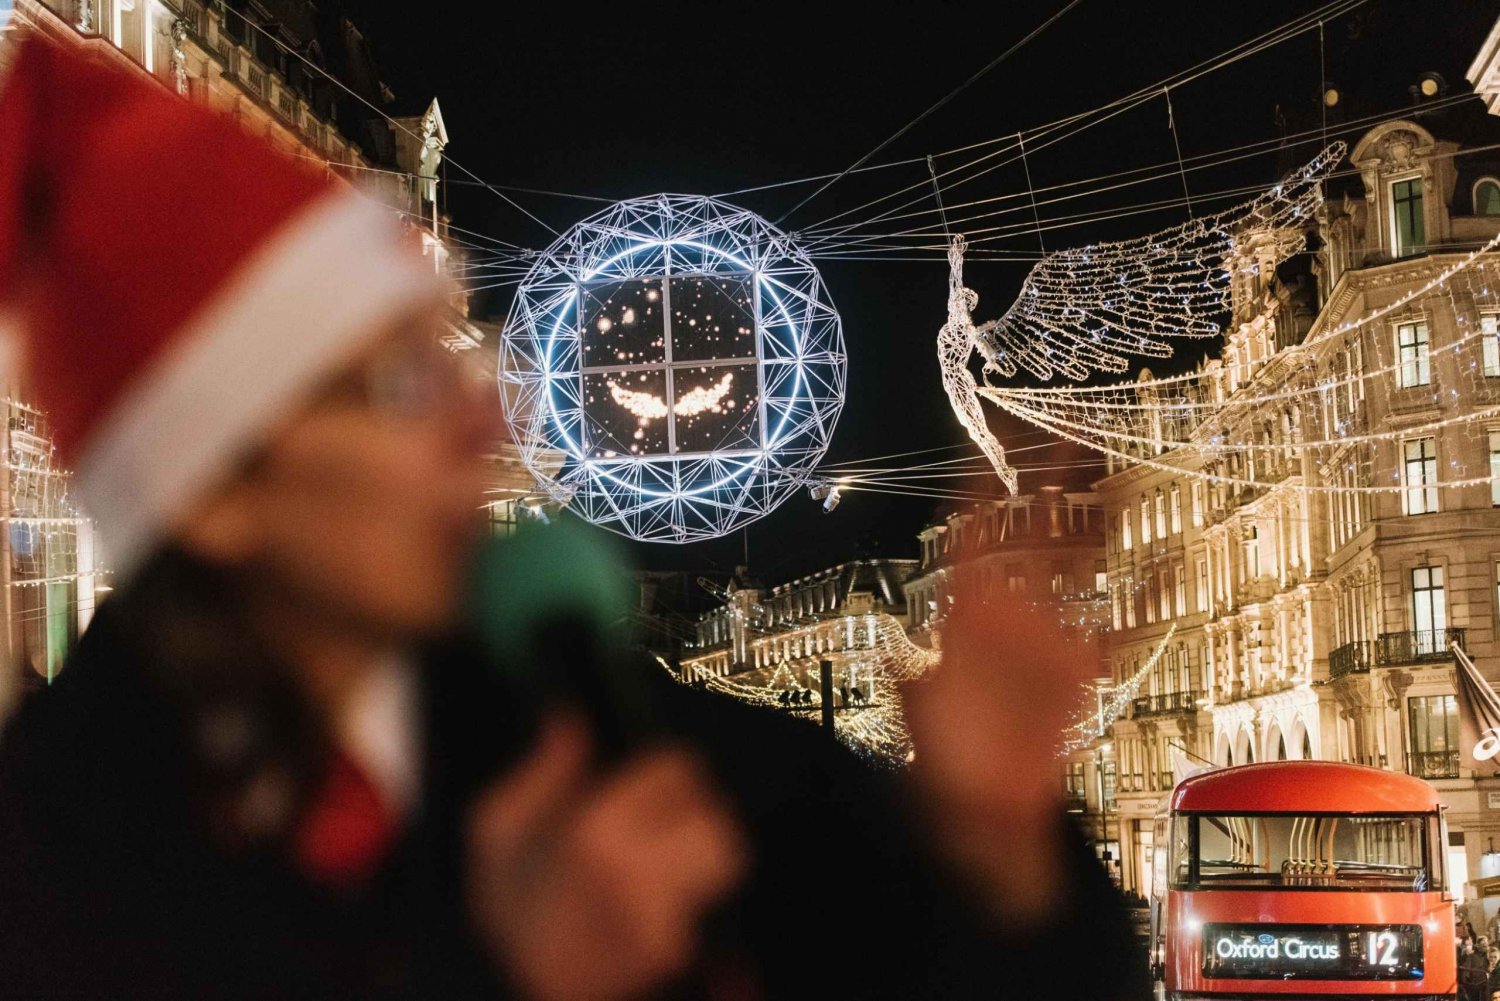 Lontoo: Tootbus Christmas Lights Tour